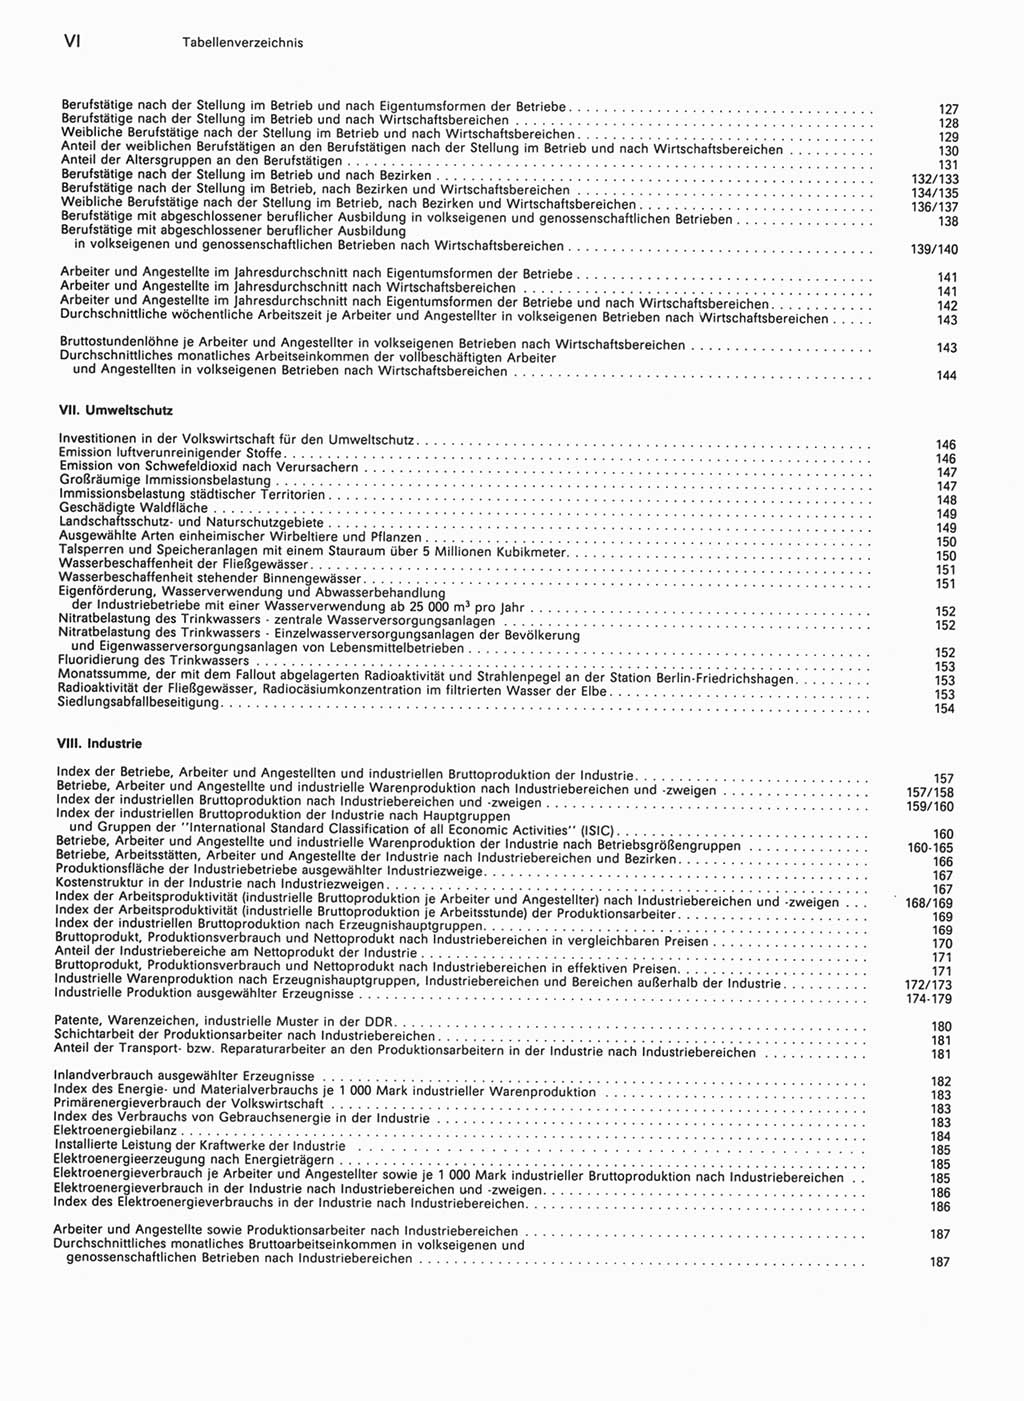 Statistisches Jahrbuch der Deutschen Demokratischen Republik (DDR) 1990, Seite 6 (Stat. Jb. DDR 1990, S. 6)